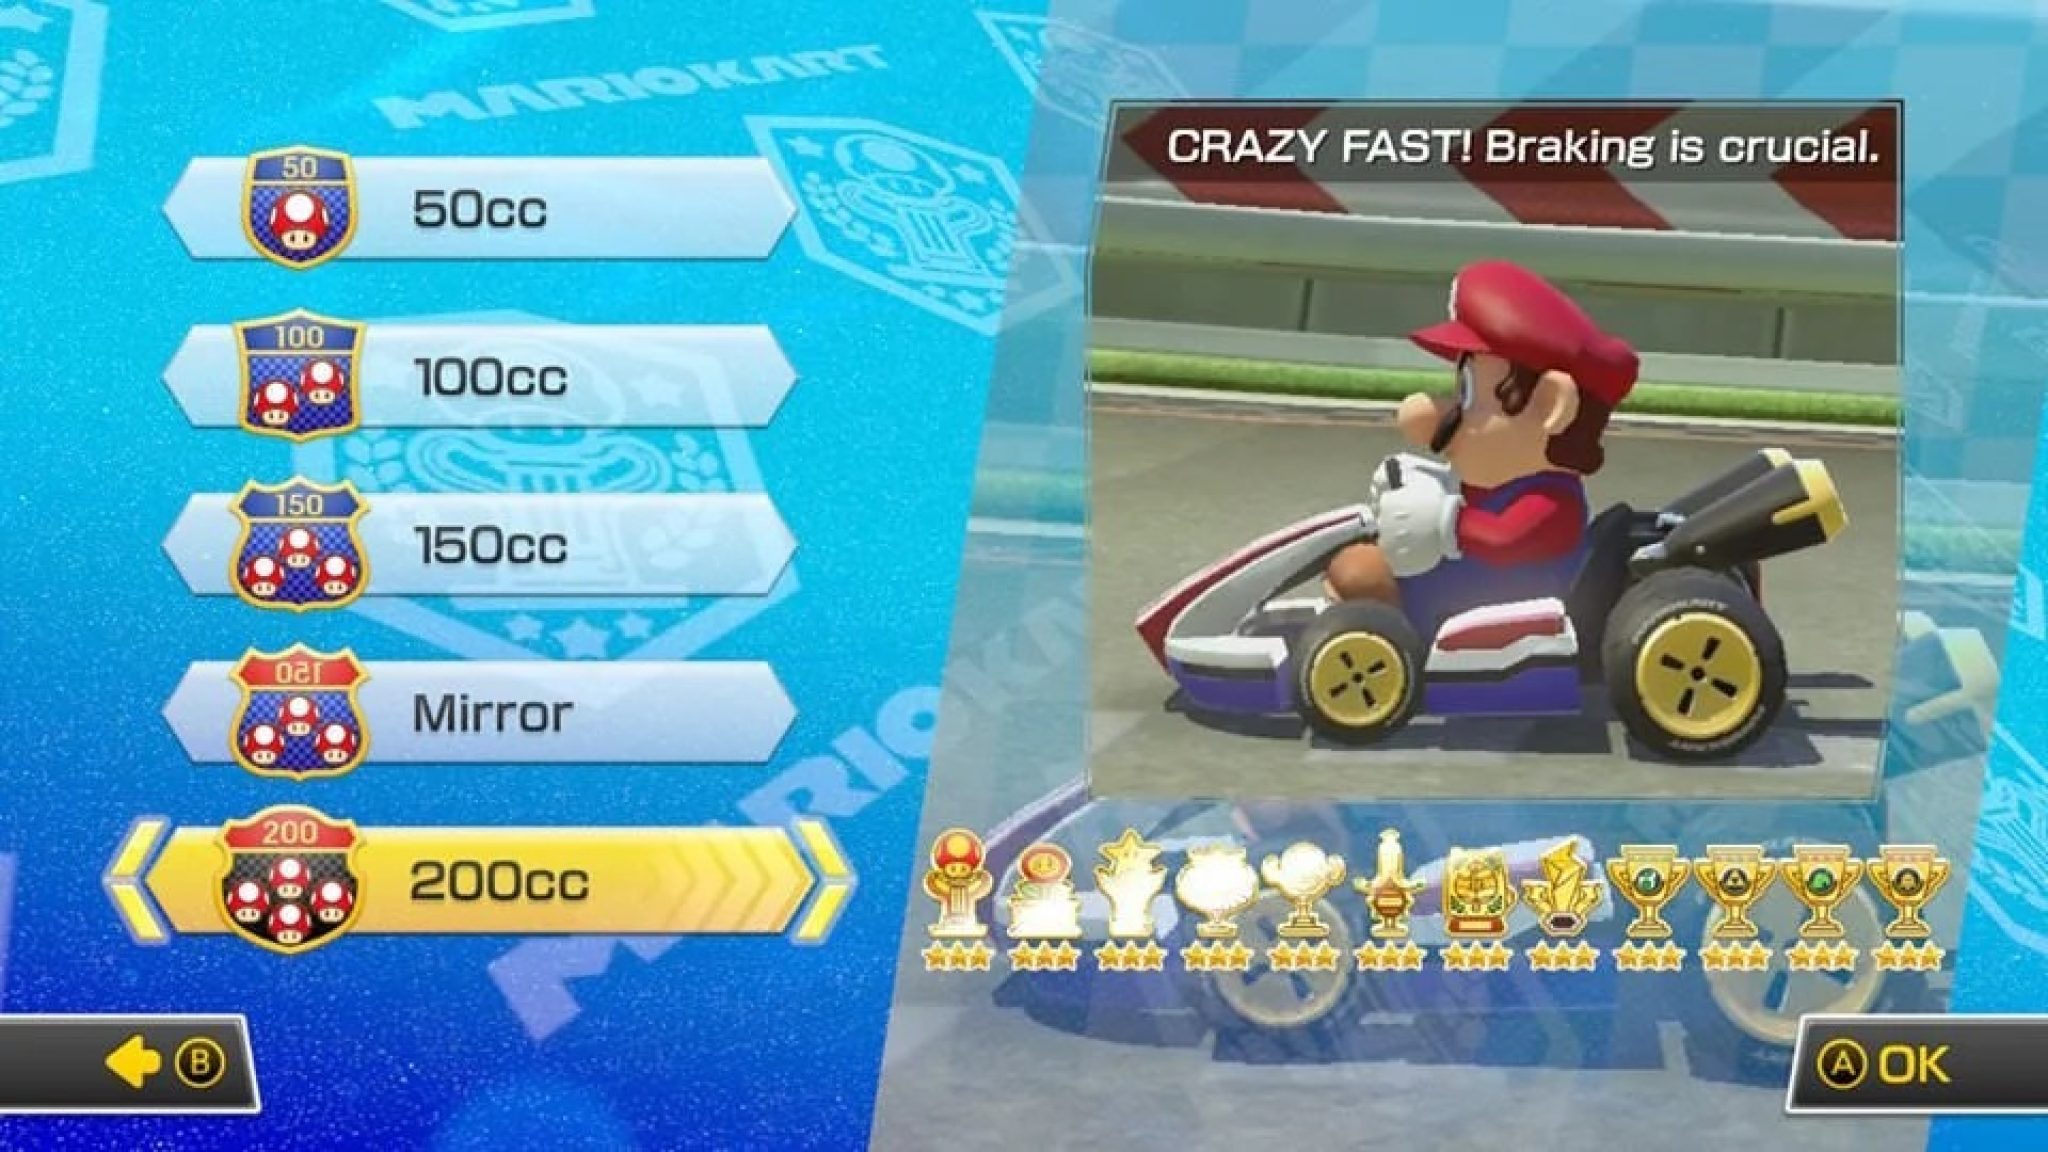 Best Mario Kart 8 Setup for 200cc? How to Nintendo